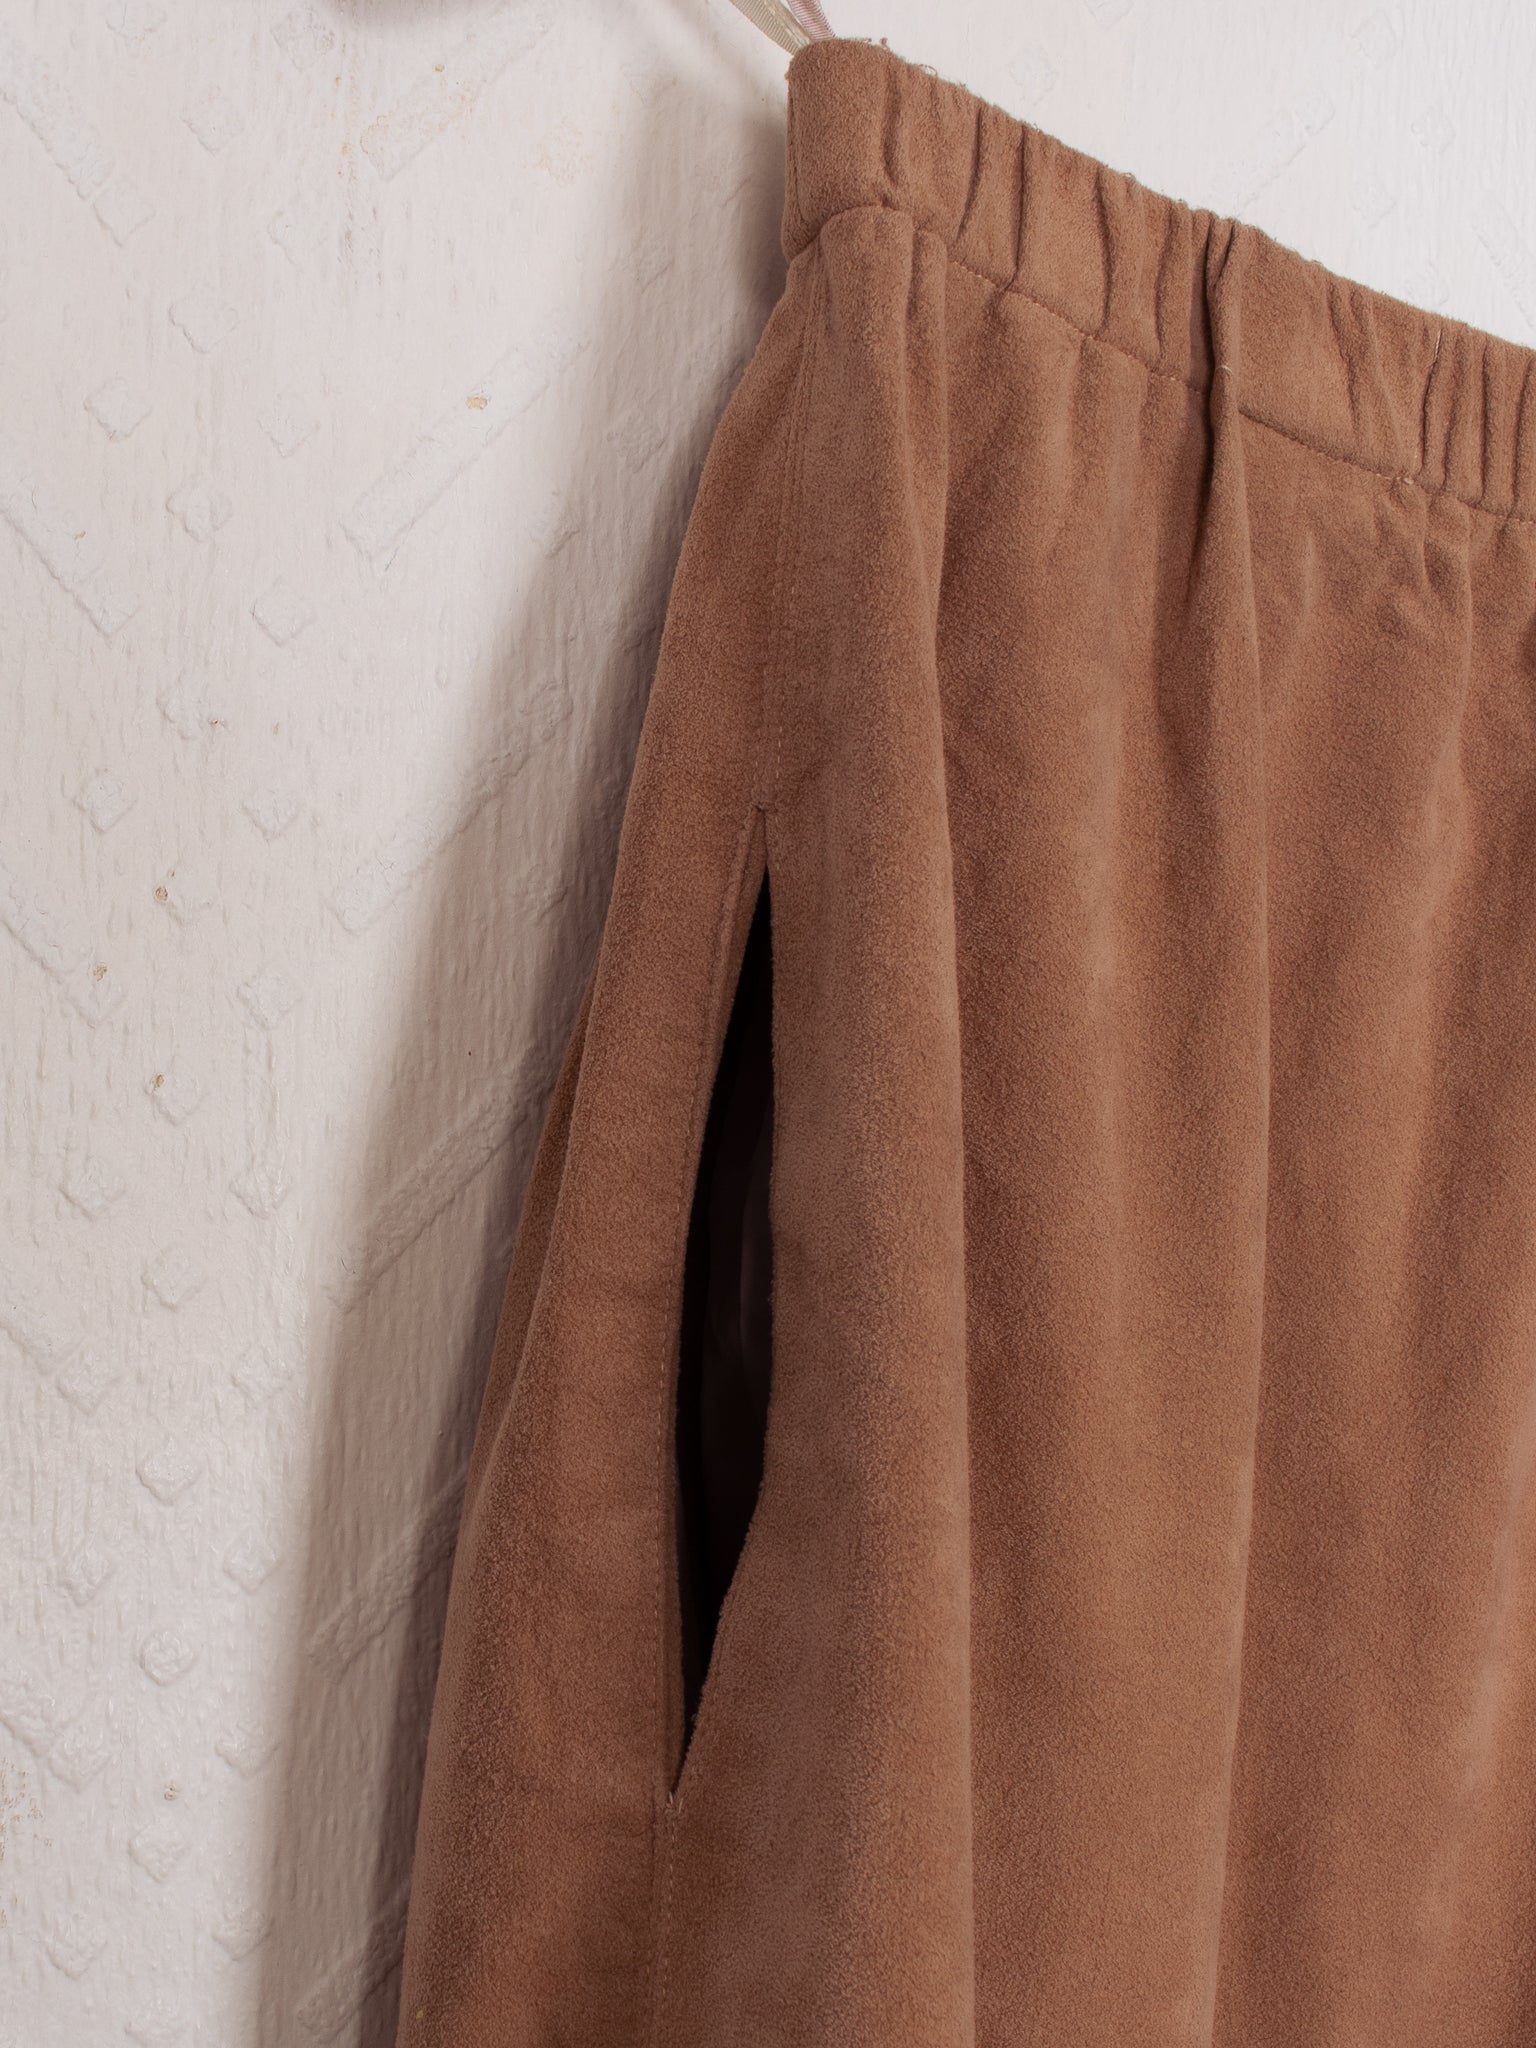 skirts shorts & dresses 70s Ultrasuede Skirt - W28